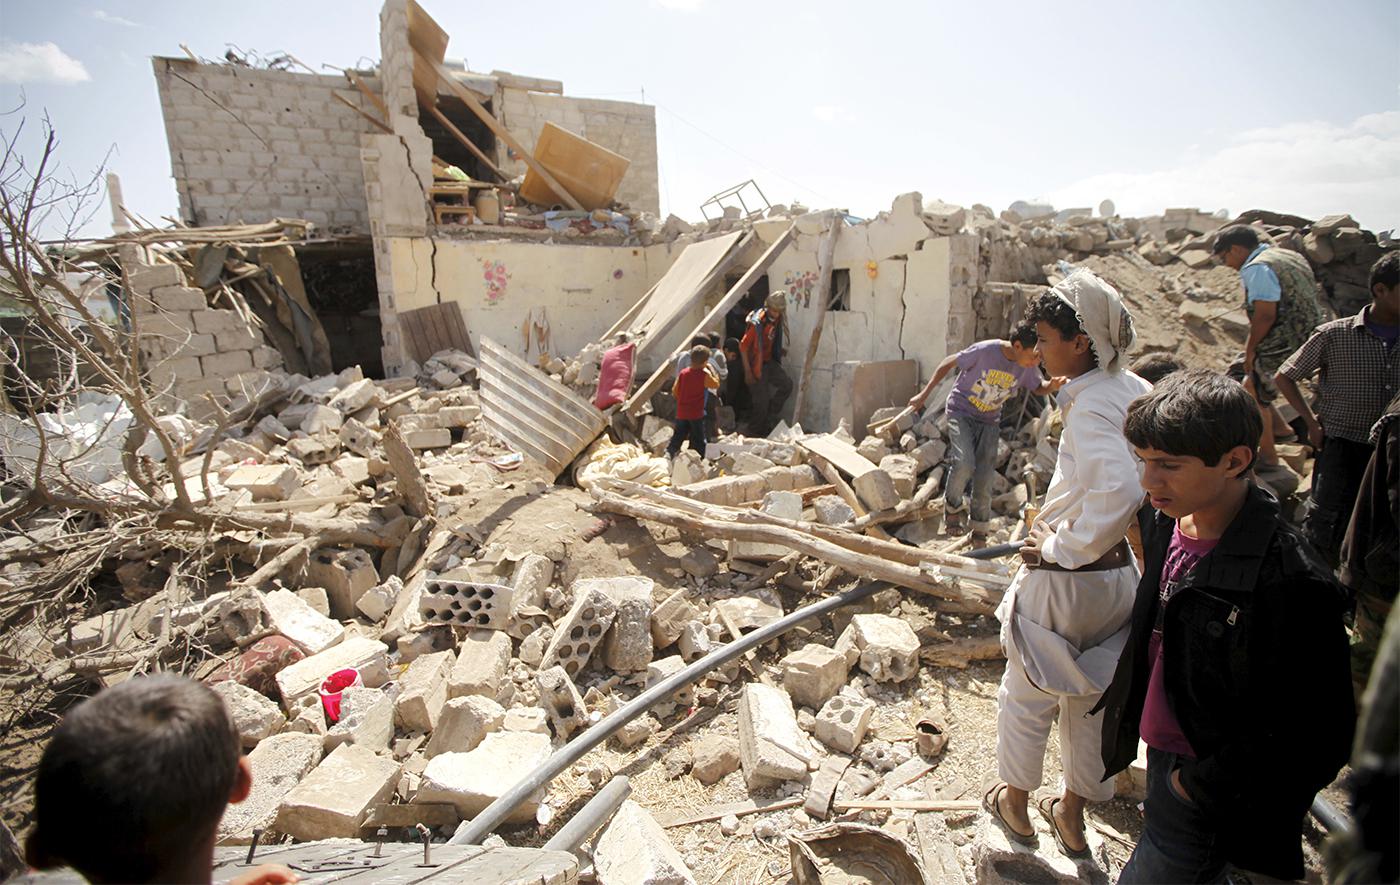 أناس يتفقدون الأضرار في منزل بعد تدميره في غارة جوية شنه التحالف بقيادة السعودية في العاصمة اليمنية صنعاء، 25 فبراير/شباط 2016.